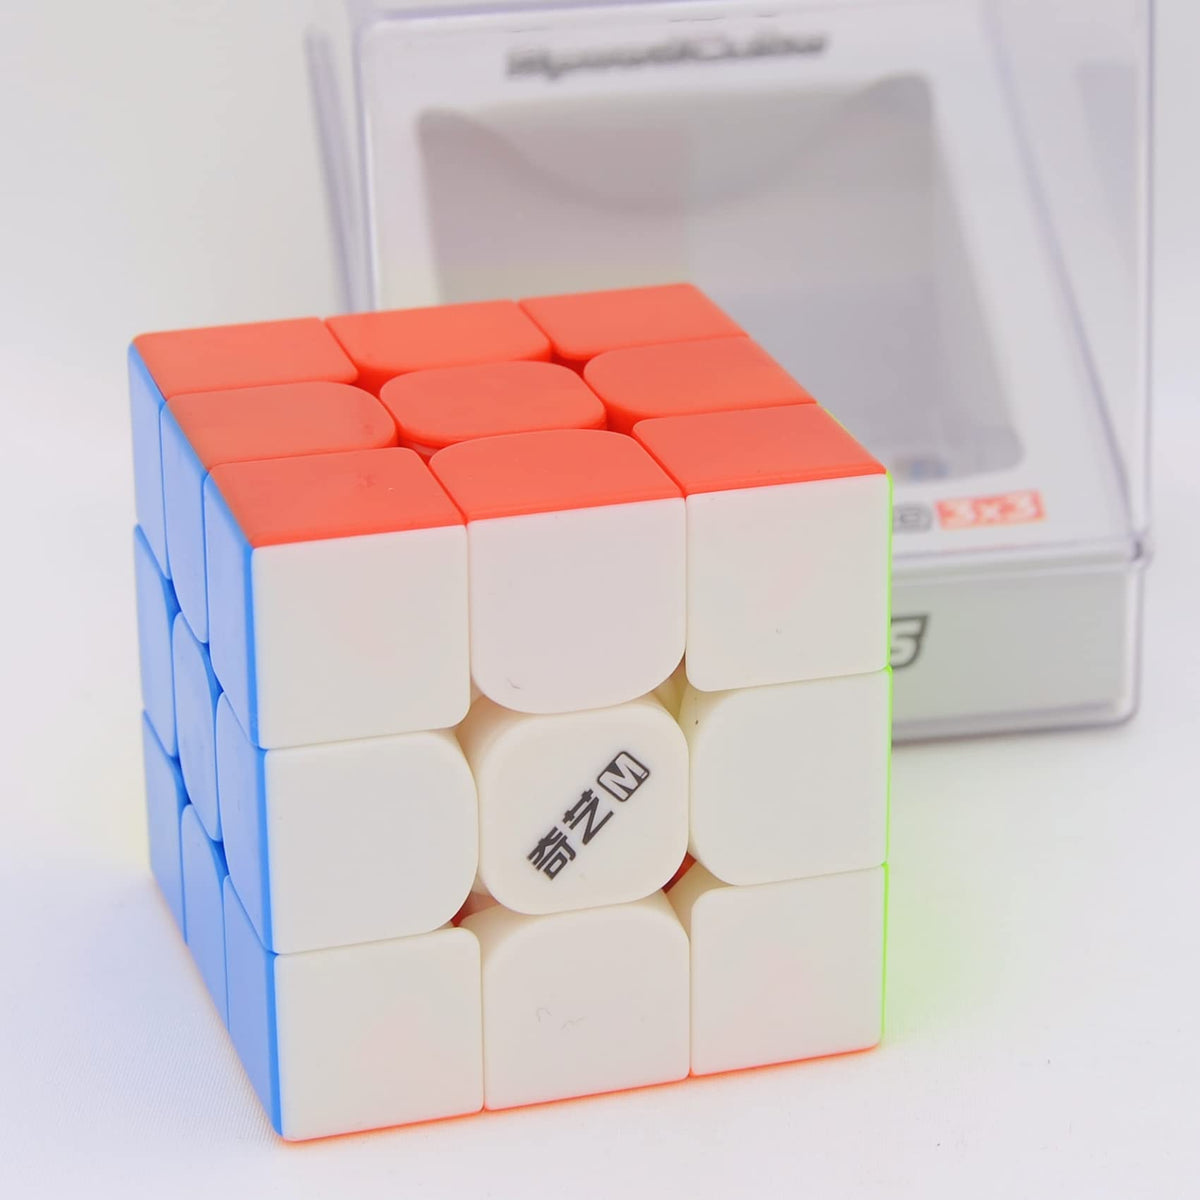 Bukefuno QY Toys MS 3x3 Magnetic Speed Puzzle stickerless Cube QY MS 3x3x3 M Mofangge Speed Cube 2020 VersionÃƒÂ¢Ã¢â€šÂ¬Ã‚Â¦